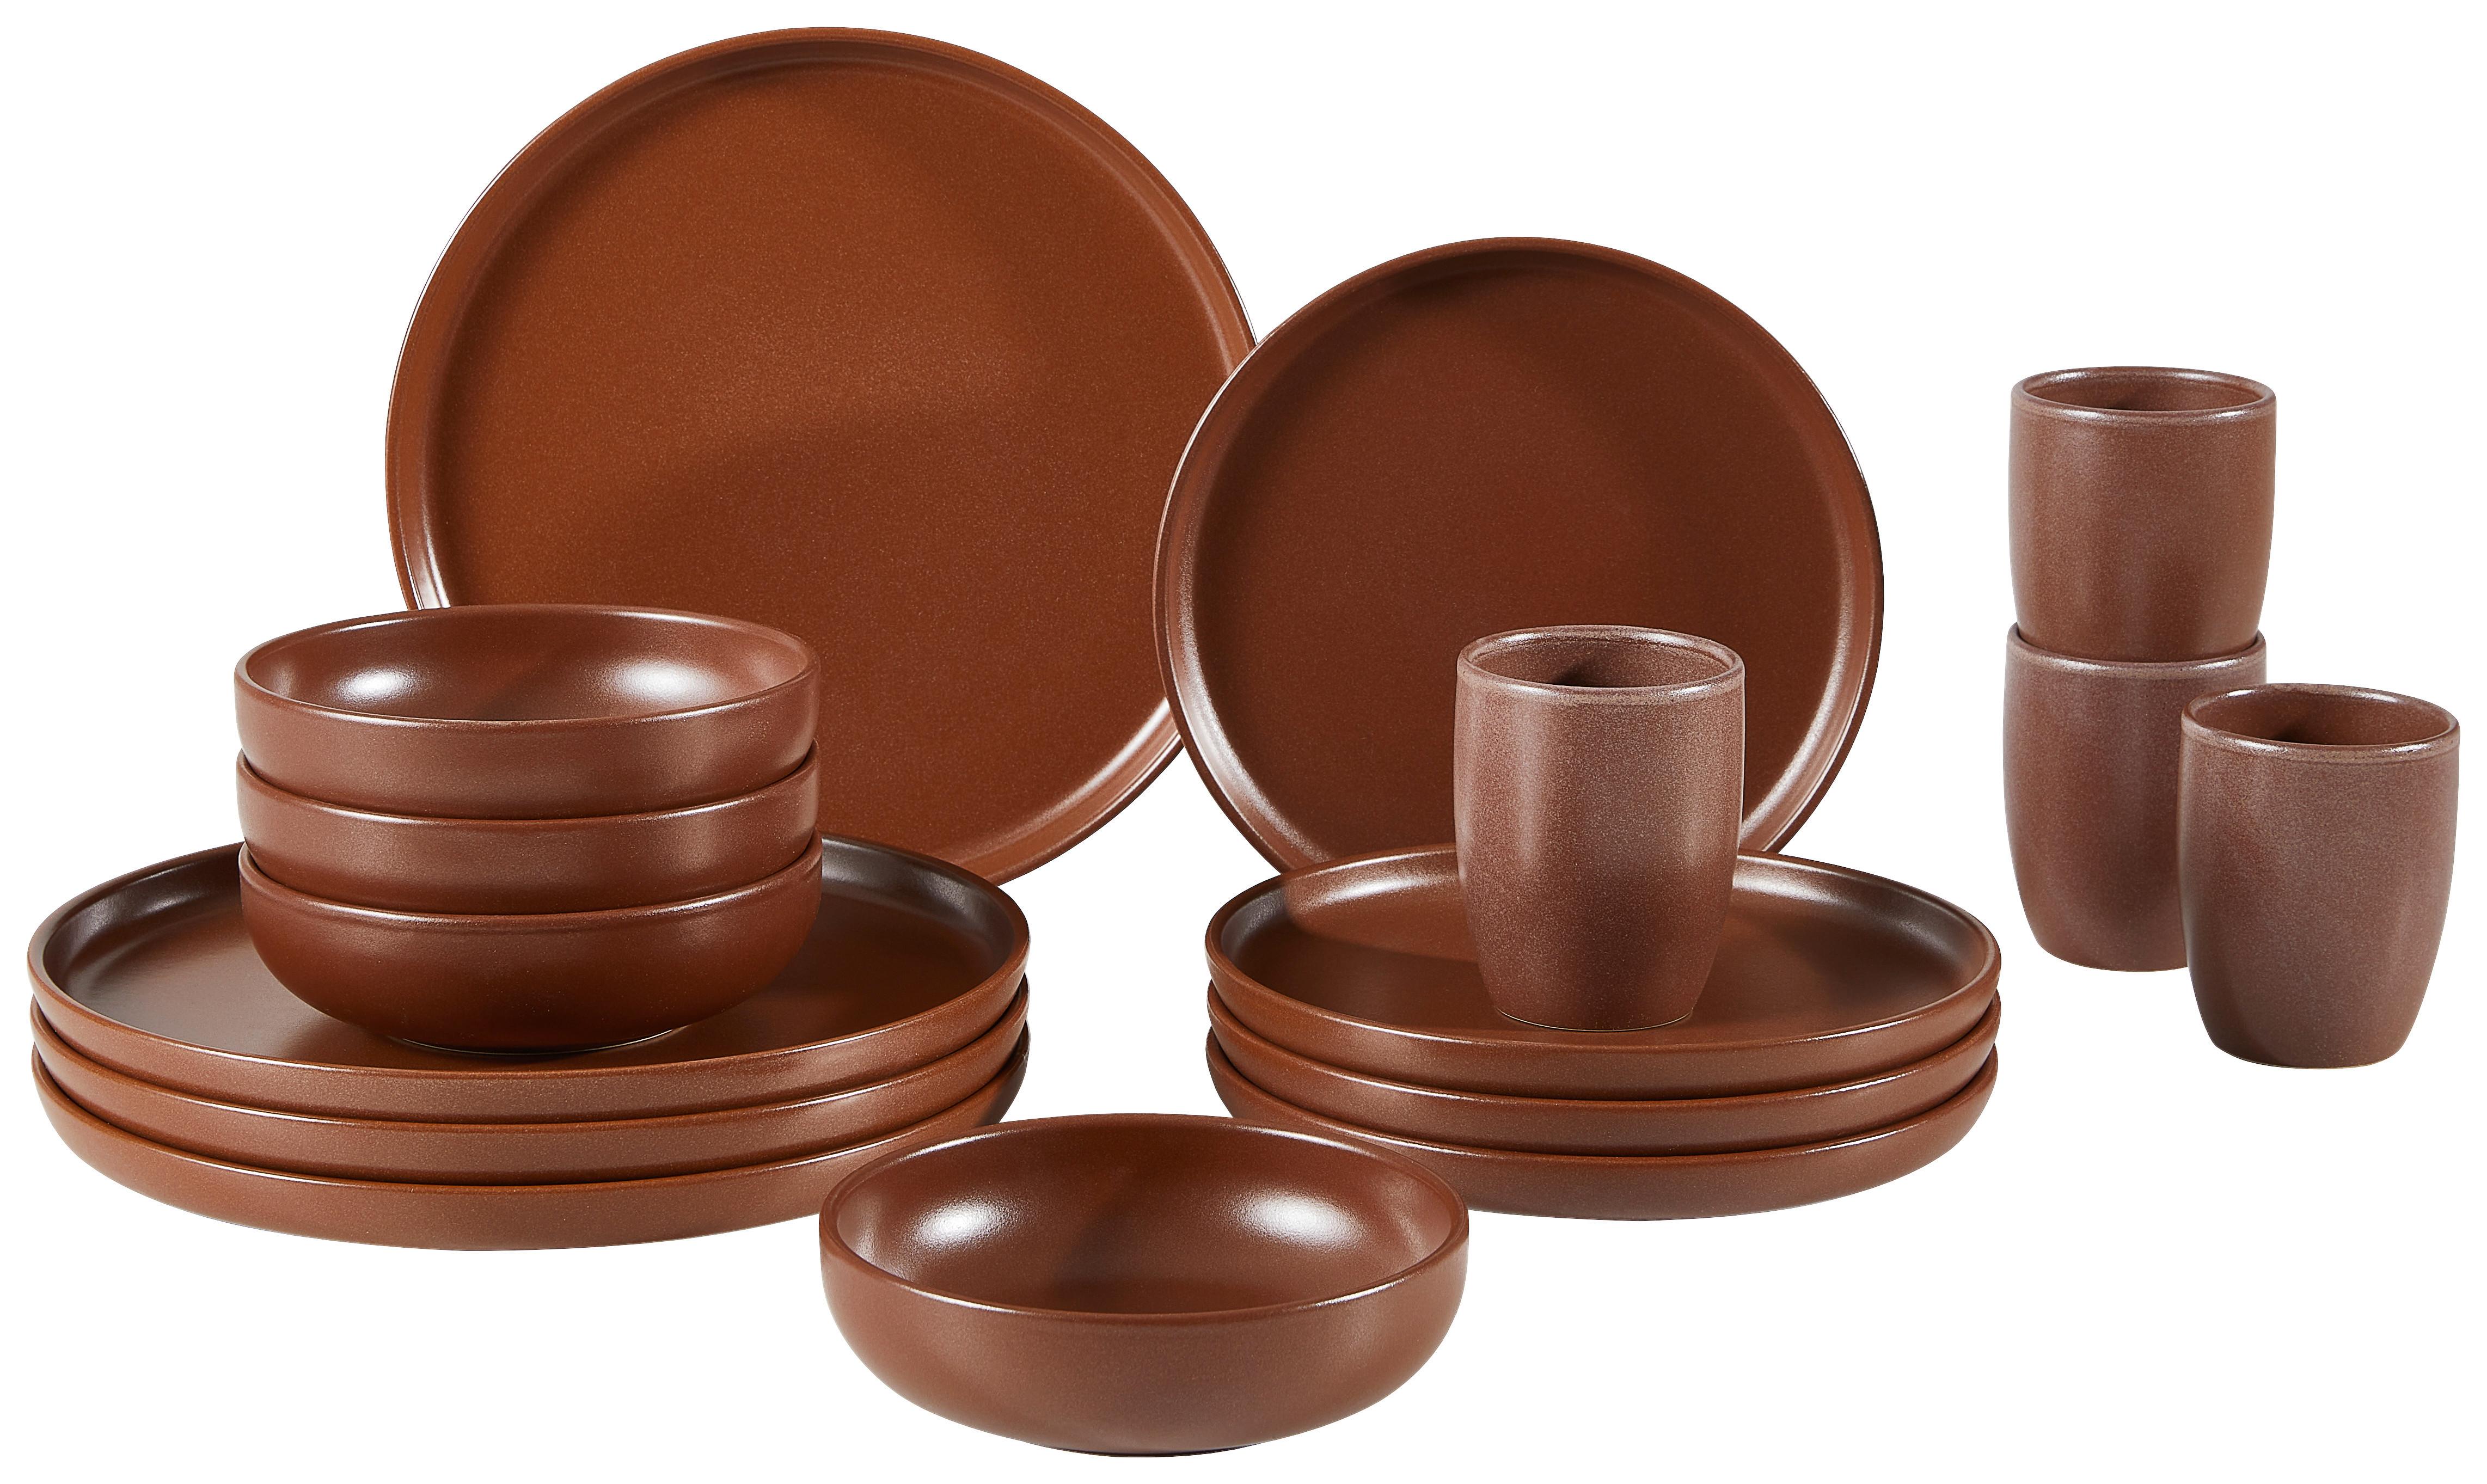 SERWIS OBIADOWO-ŚNIADANIOWY UNO BRAUN - brązowy, Trend, ceramika (43/40/37cm) - Creatable